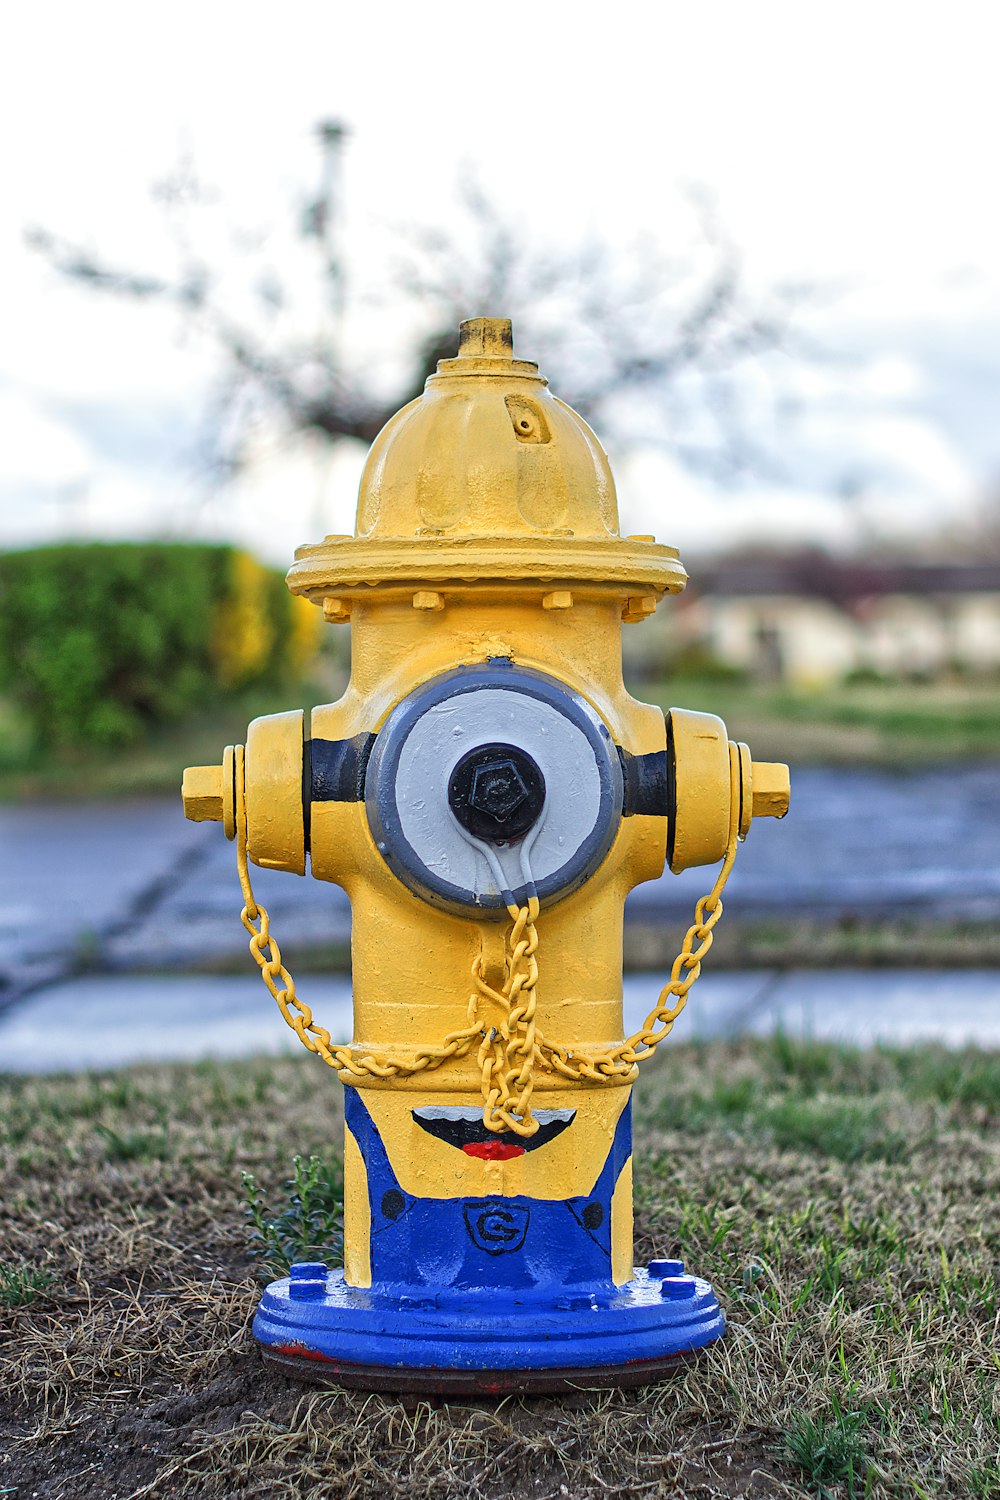 um hidrante amarelo e azul sentado na grama